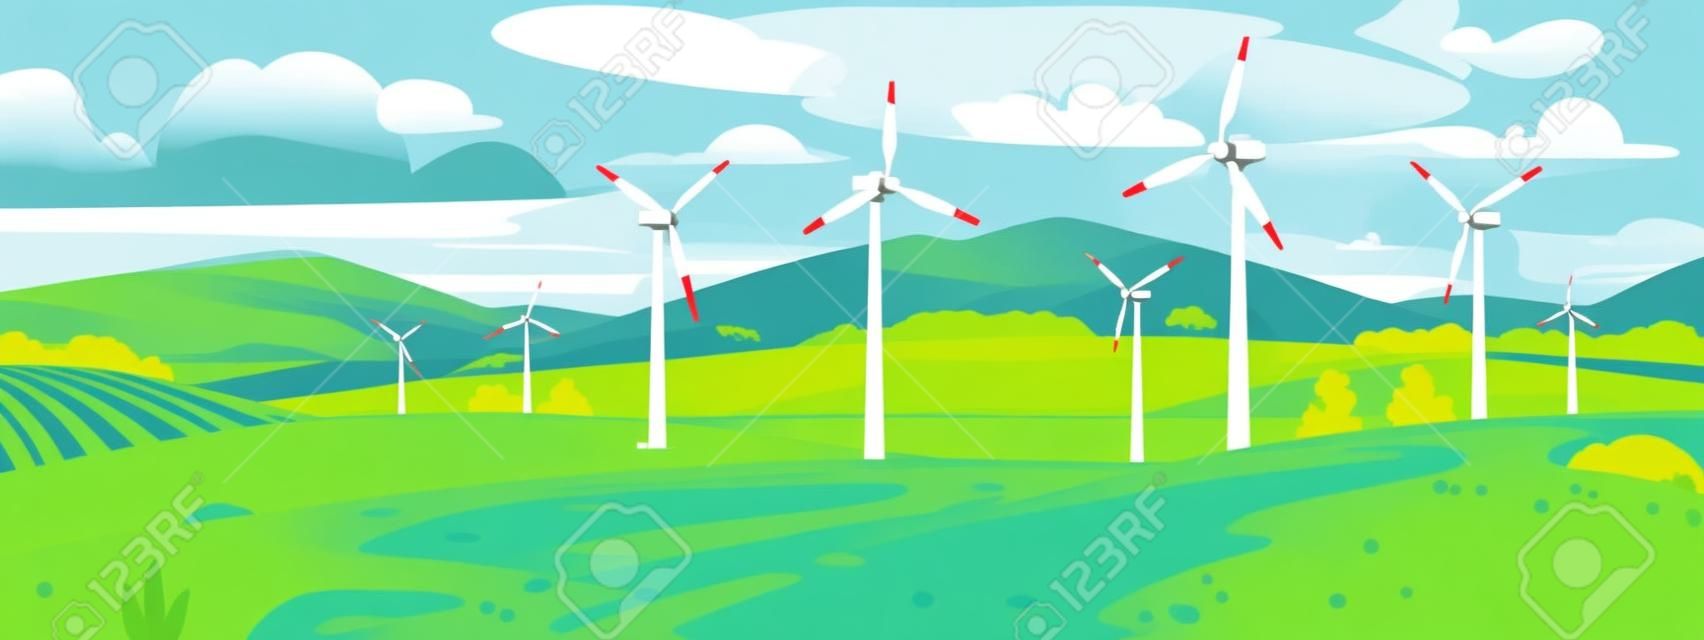 Um parque eólico ou usina de energia no campo perto do lago e das montanhas no verão. Turbinas eólicas de uma usina geram eletricidade ecológica e sustentável. Ilustração vetorial em estilo cartoon.